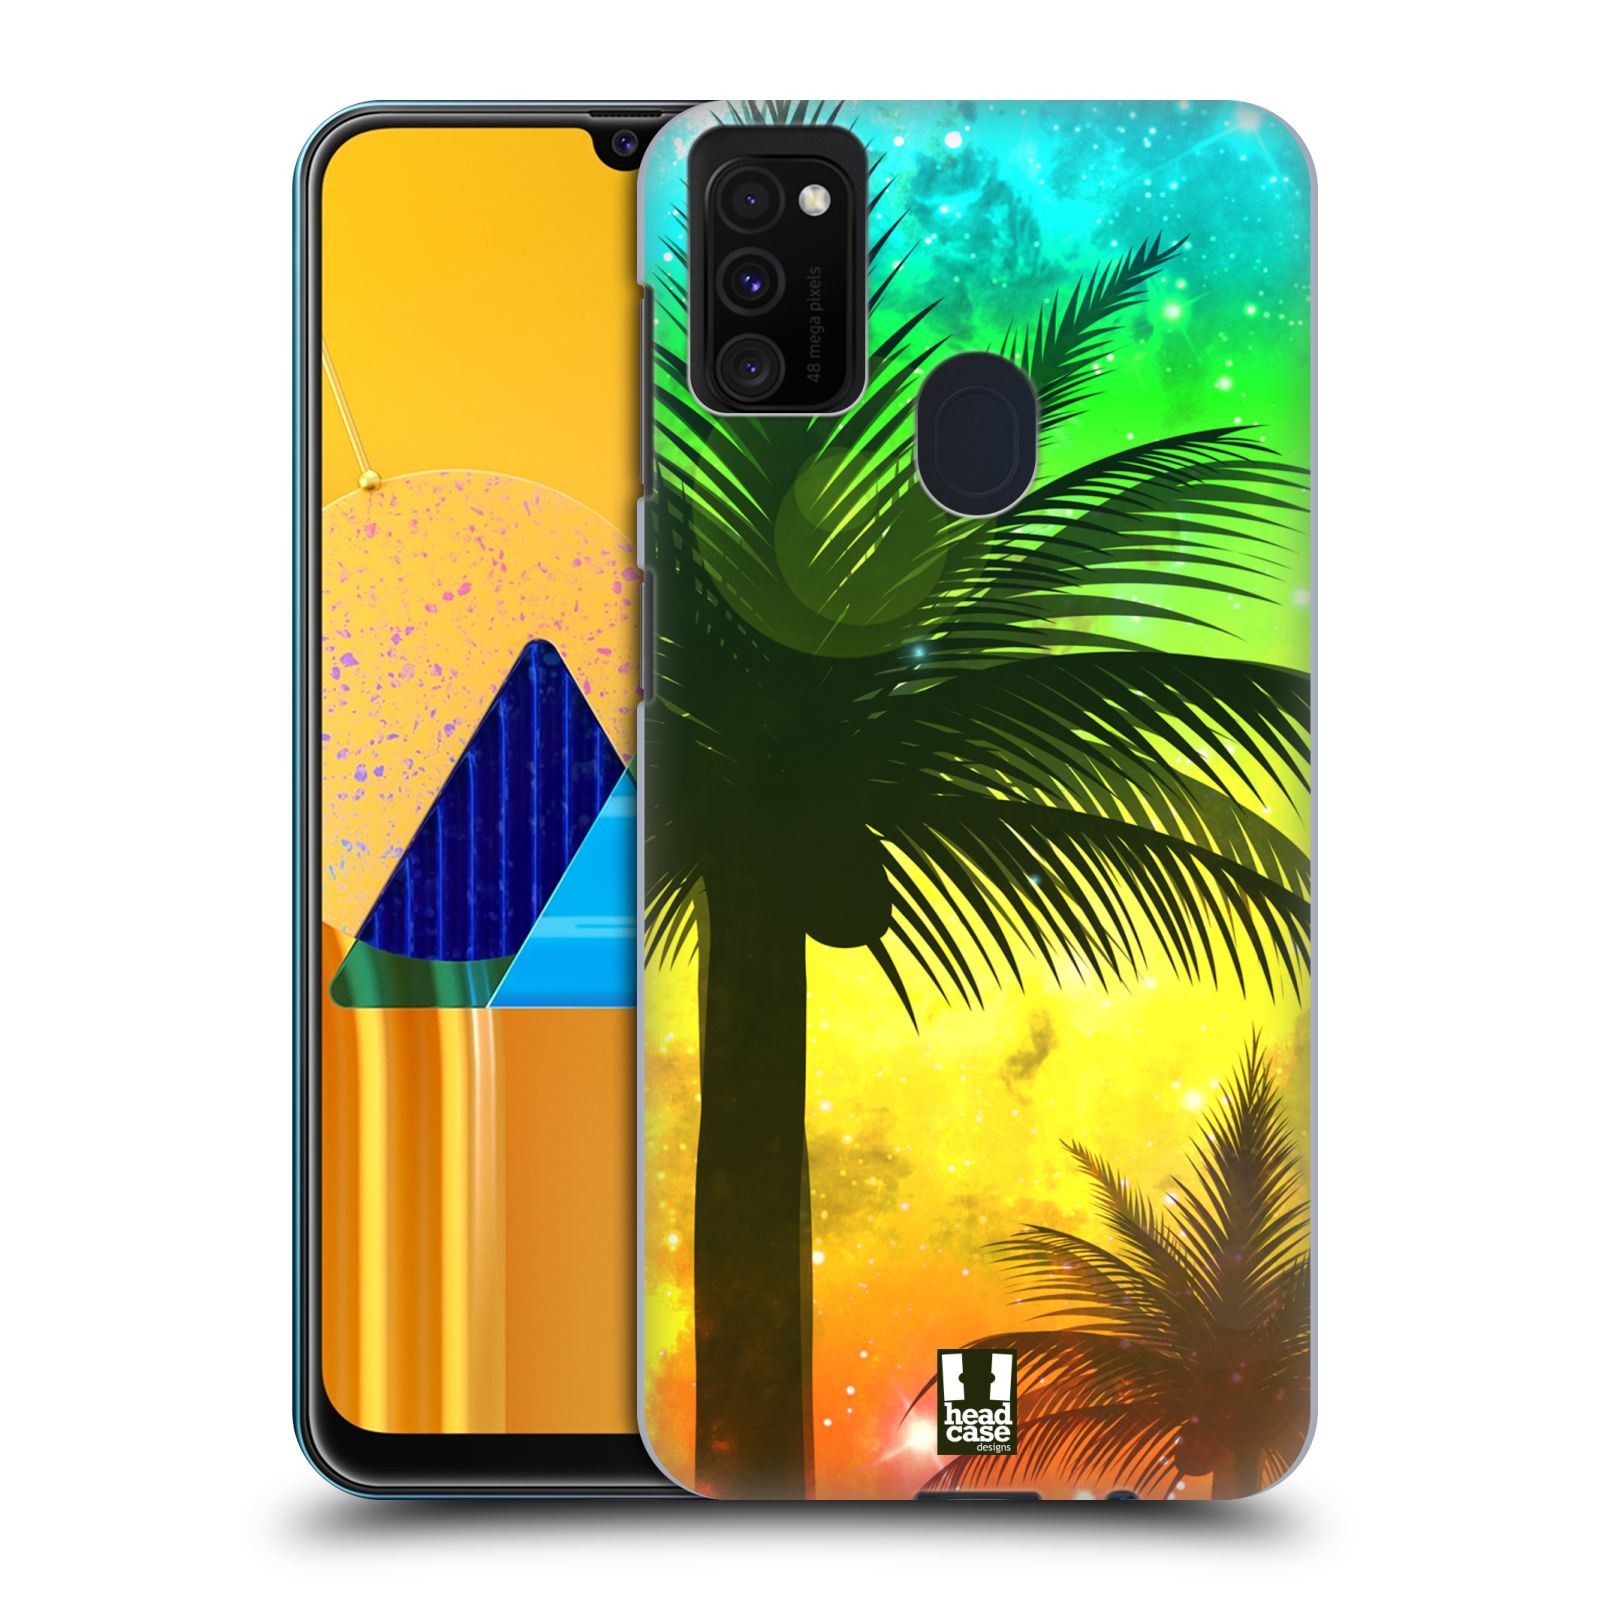 Zadní kryt na mobil Samsung Galaxy M21 vzor Kreslený motiv silueta moře a palmy ZELENÁ A ORANŽOVÁ